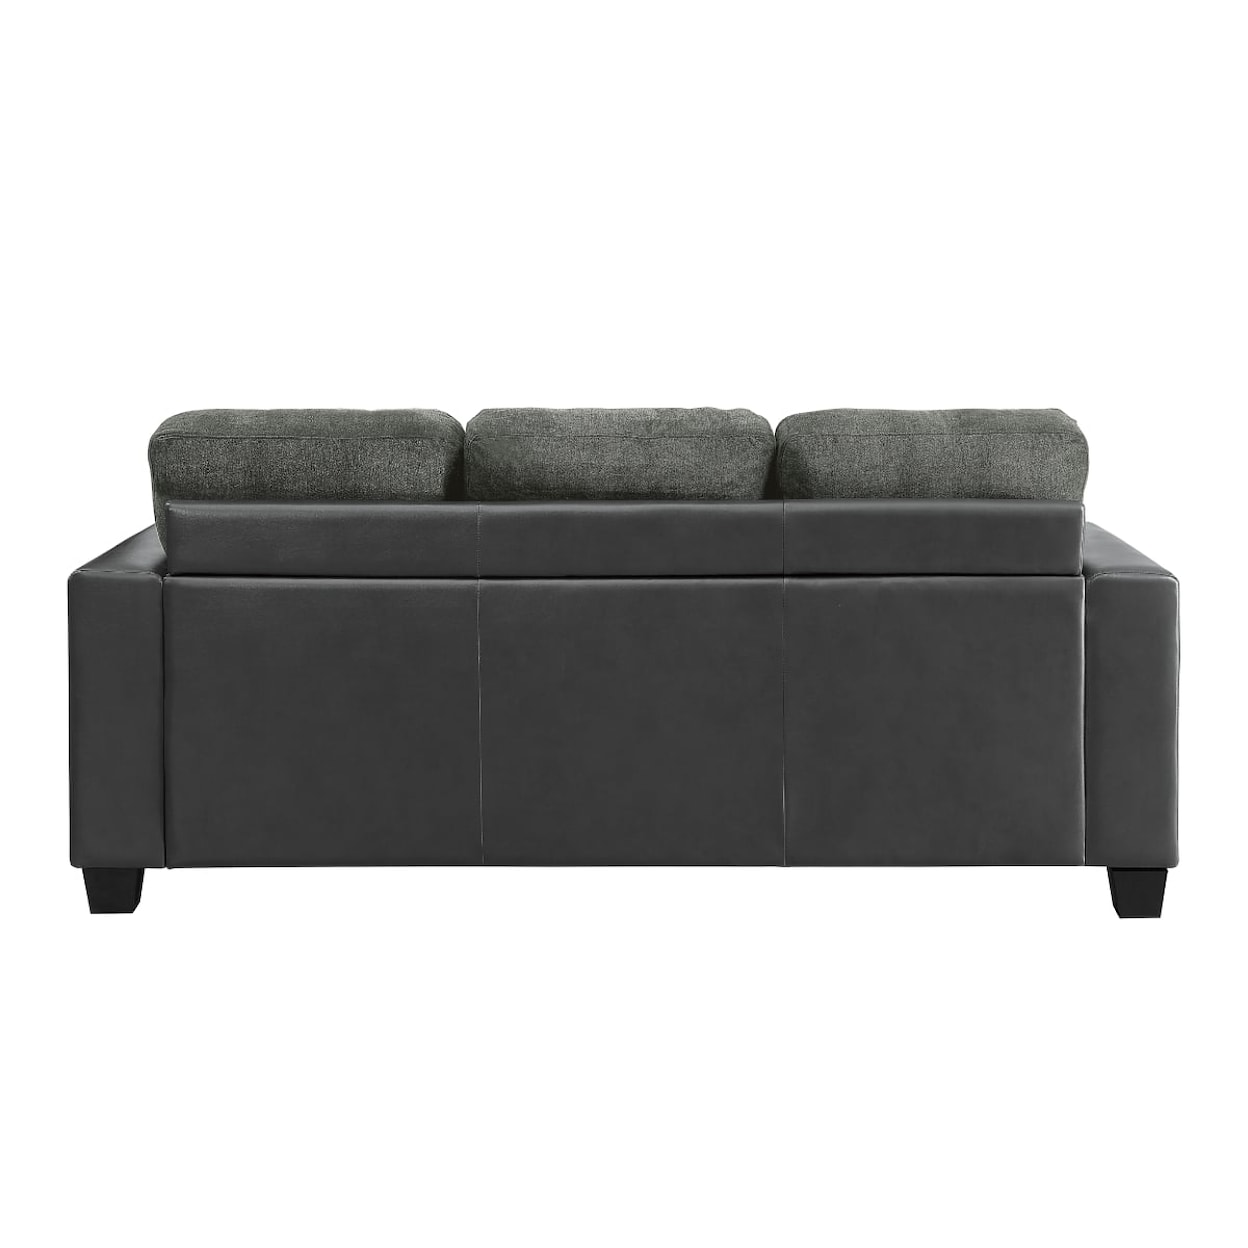 Homelegance Furniture Slater Reversible Sofa Chaise